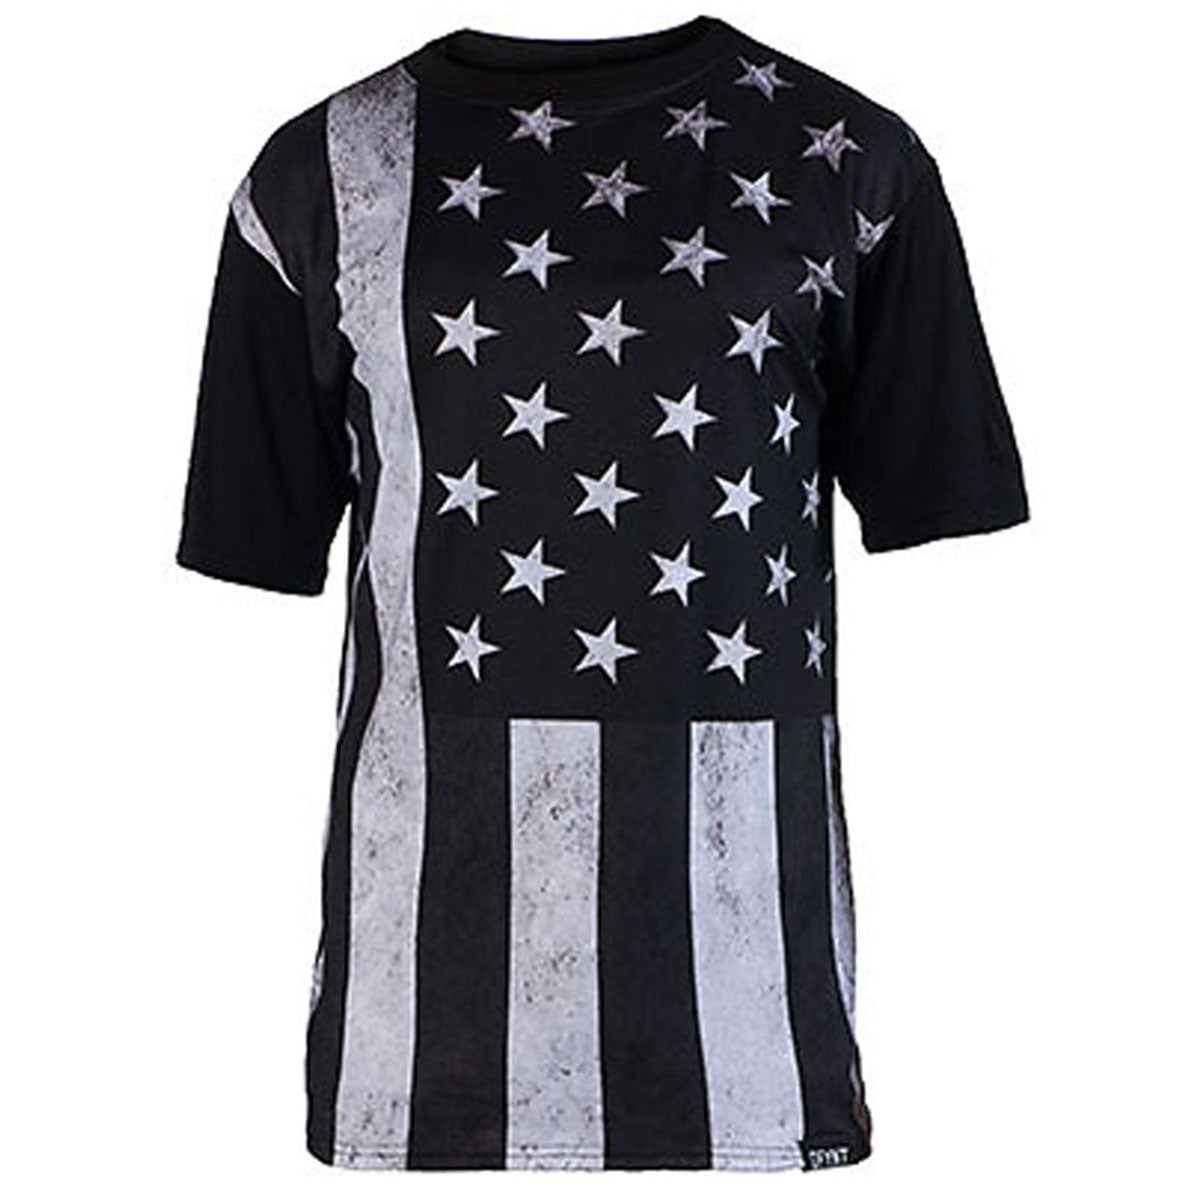 Defyant Sub Black Flag Adult Short-Sleeve Shirts-X000L5GYBT